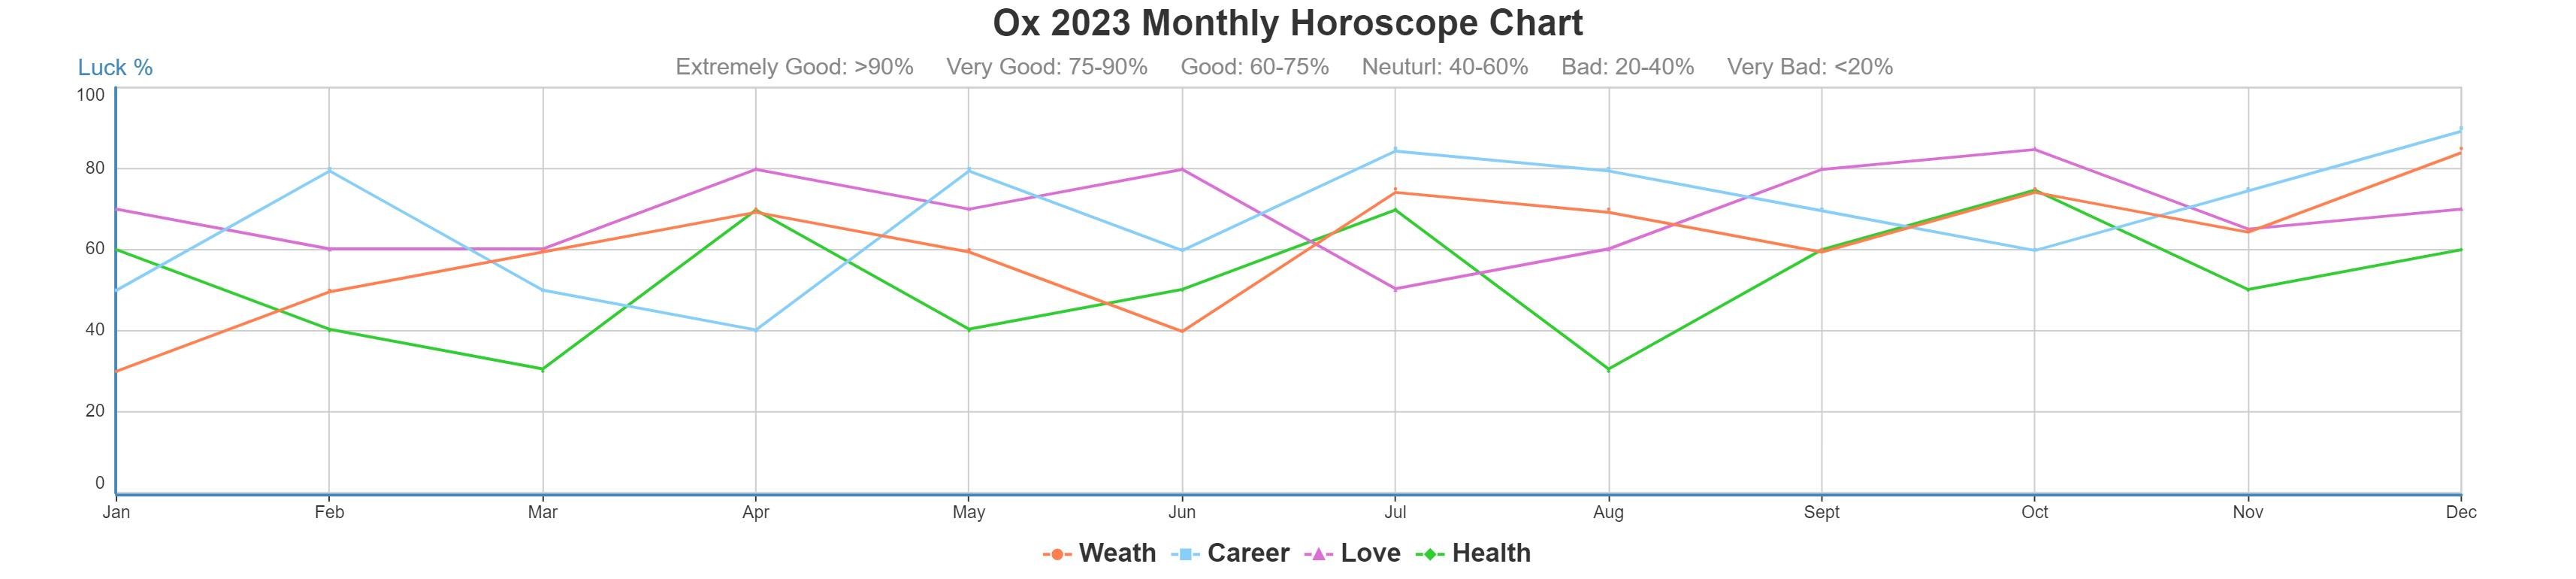 Ox 2023 monthly horoscope